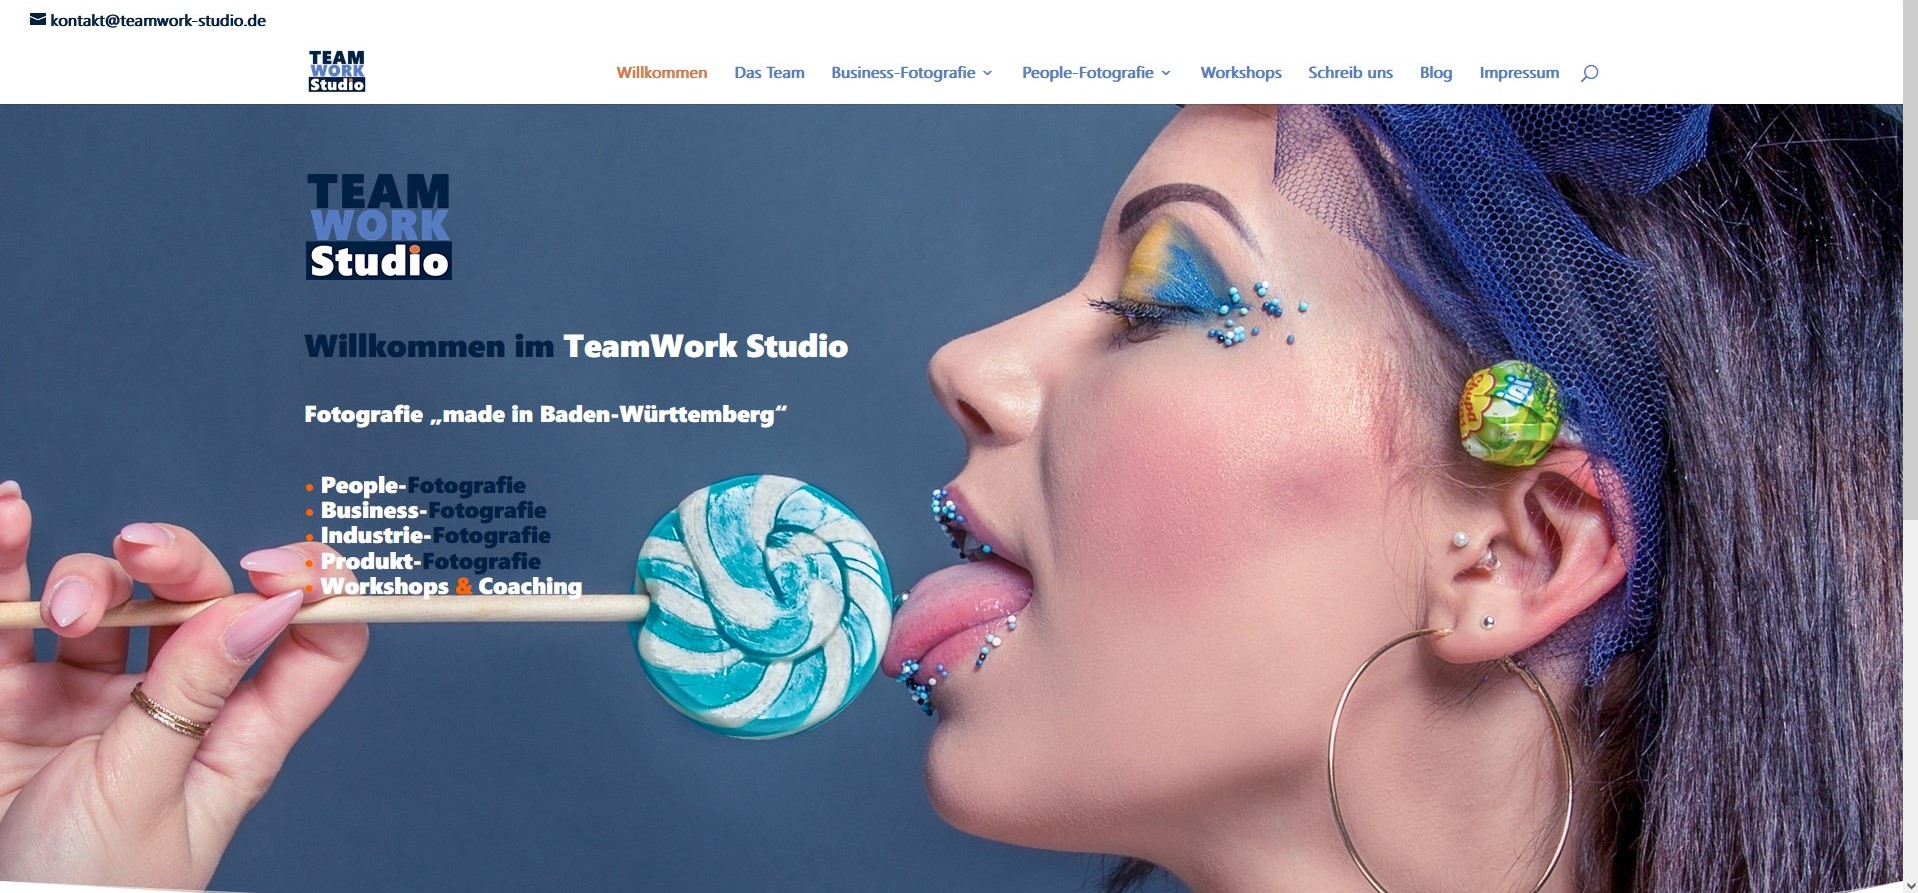 erster Entwurf der neuen Teamwork Studio Webseite